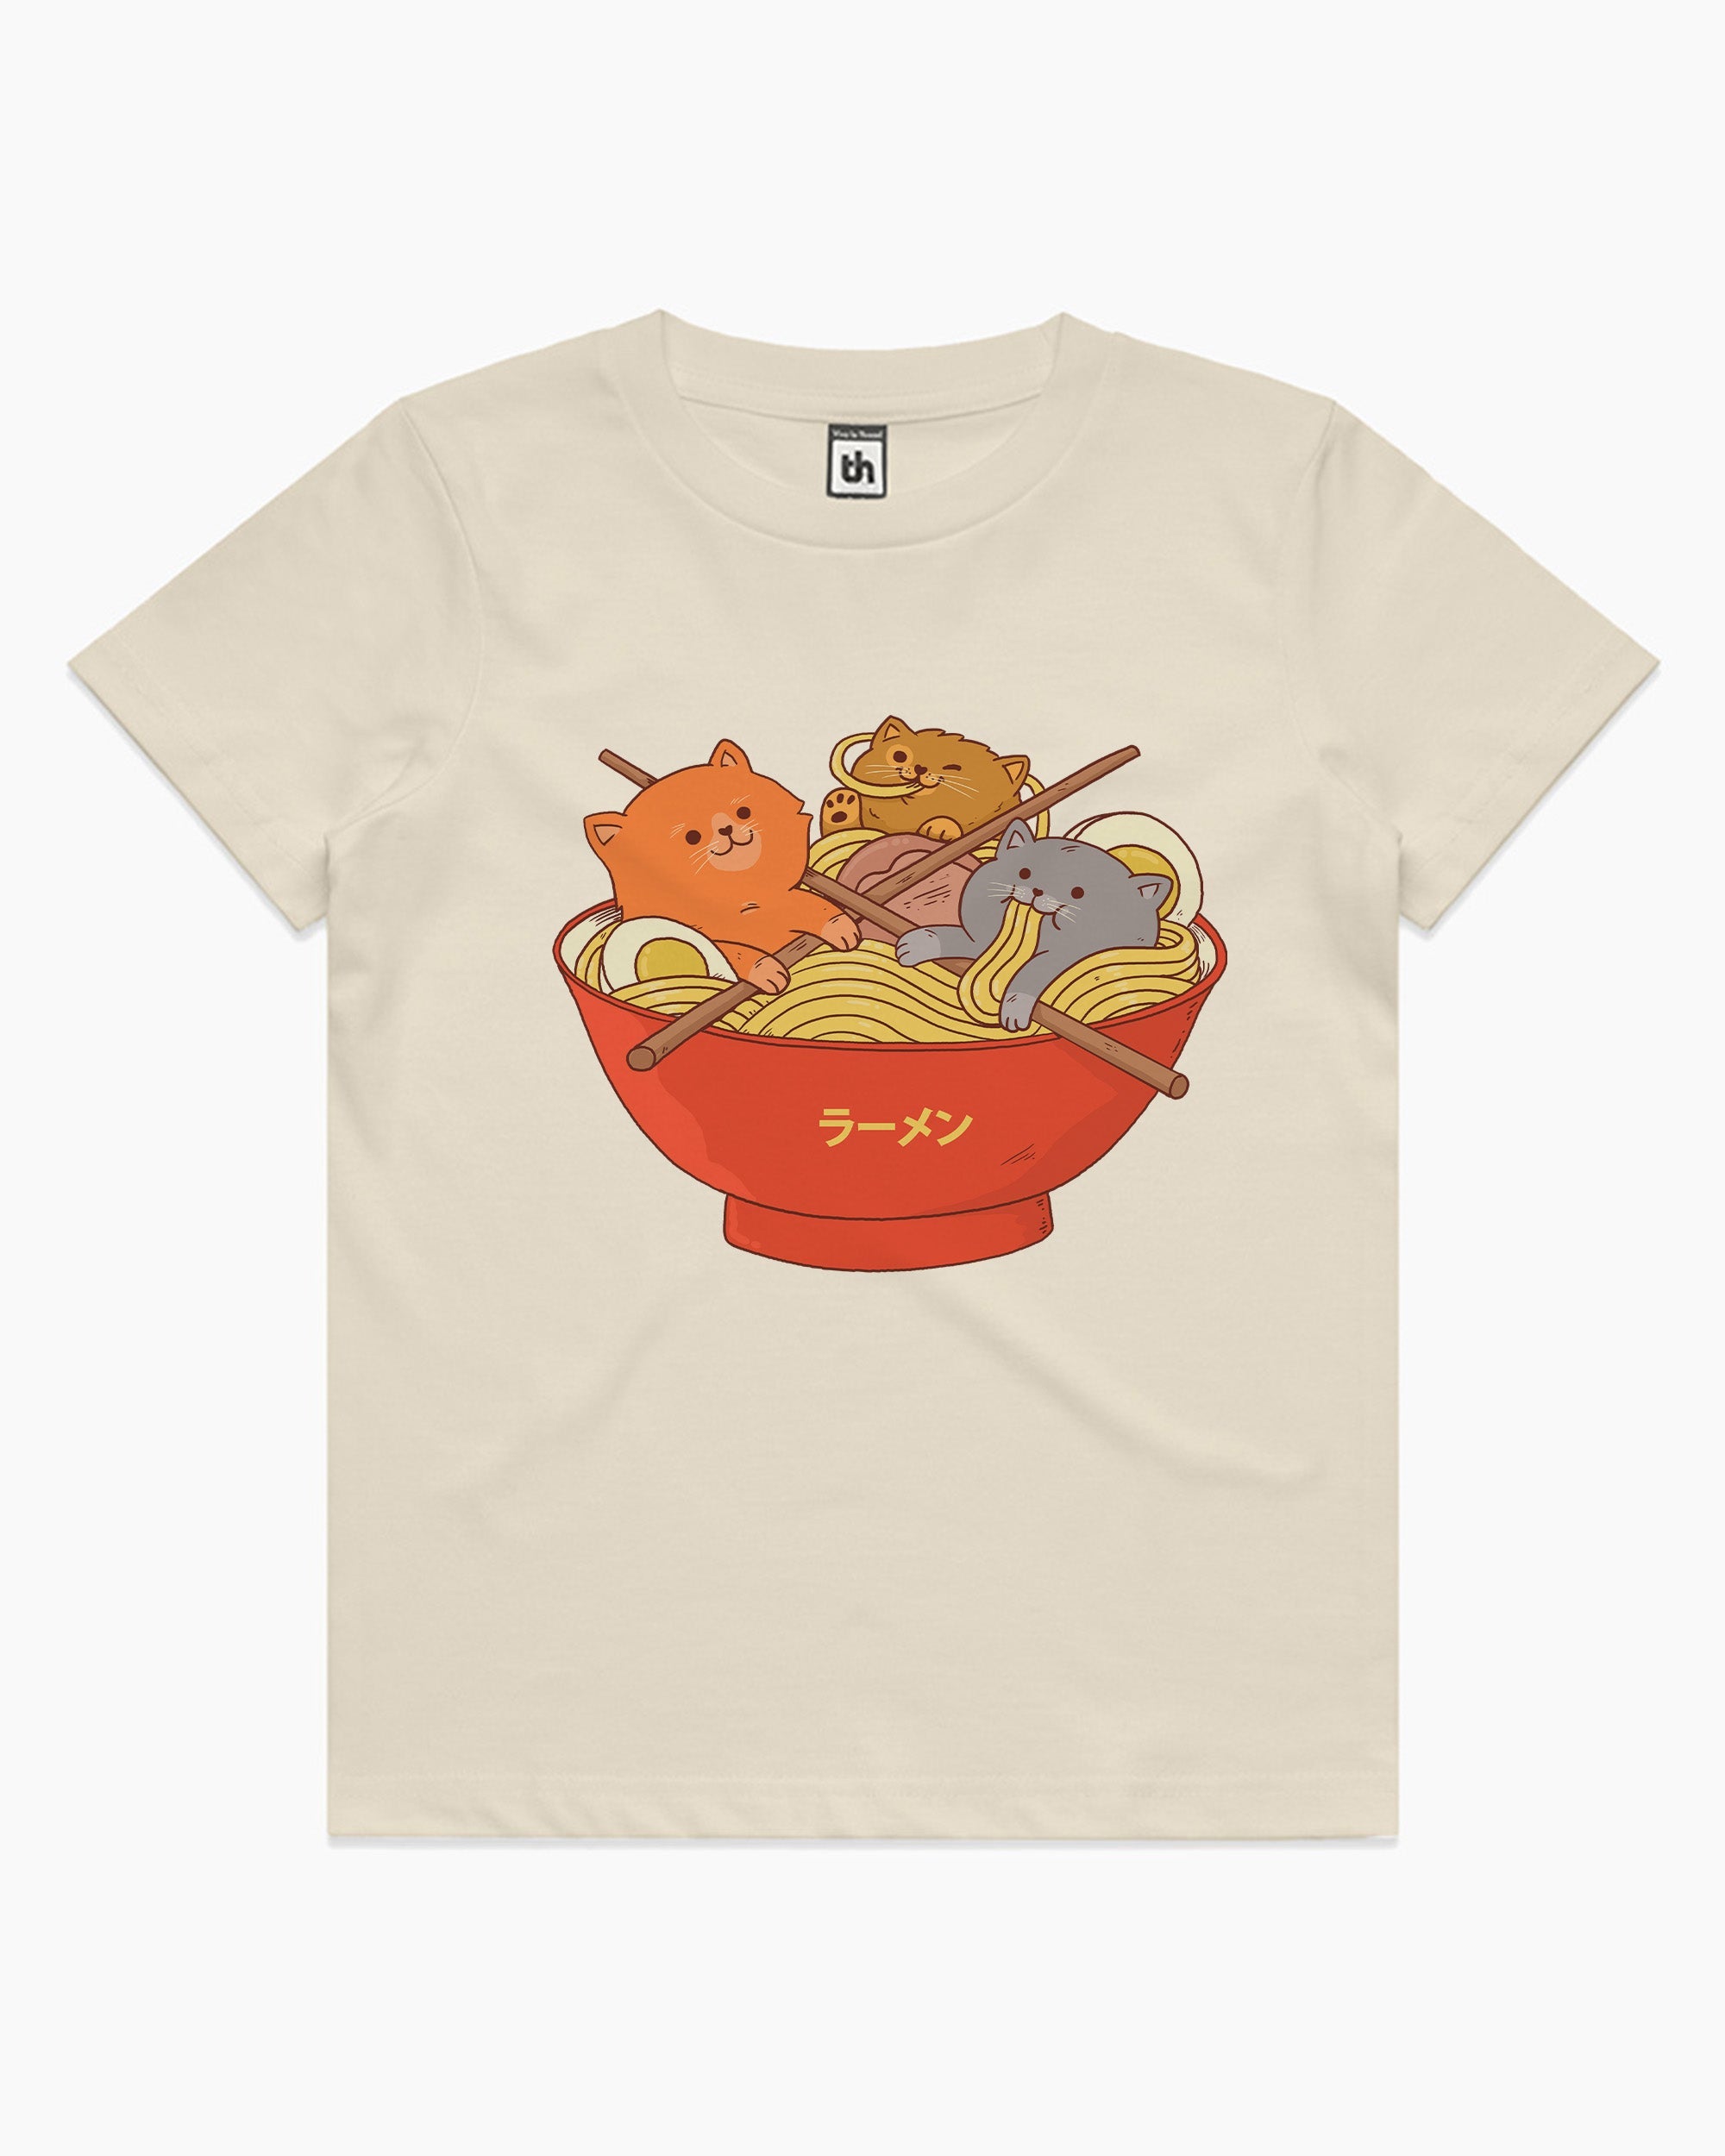 Ramen and Cats Kids T-Shirt Australia Online #Natural